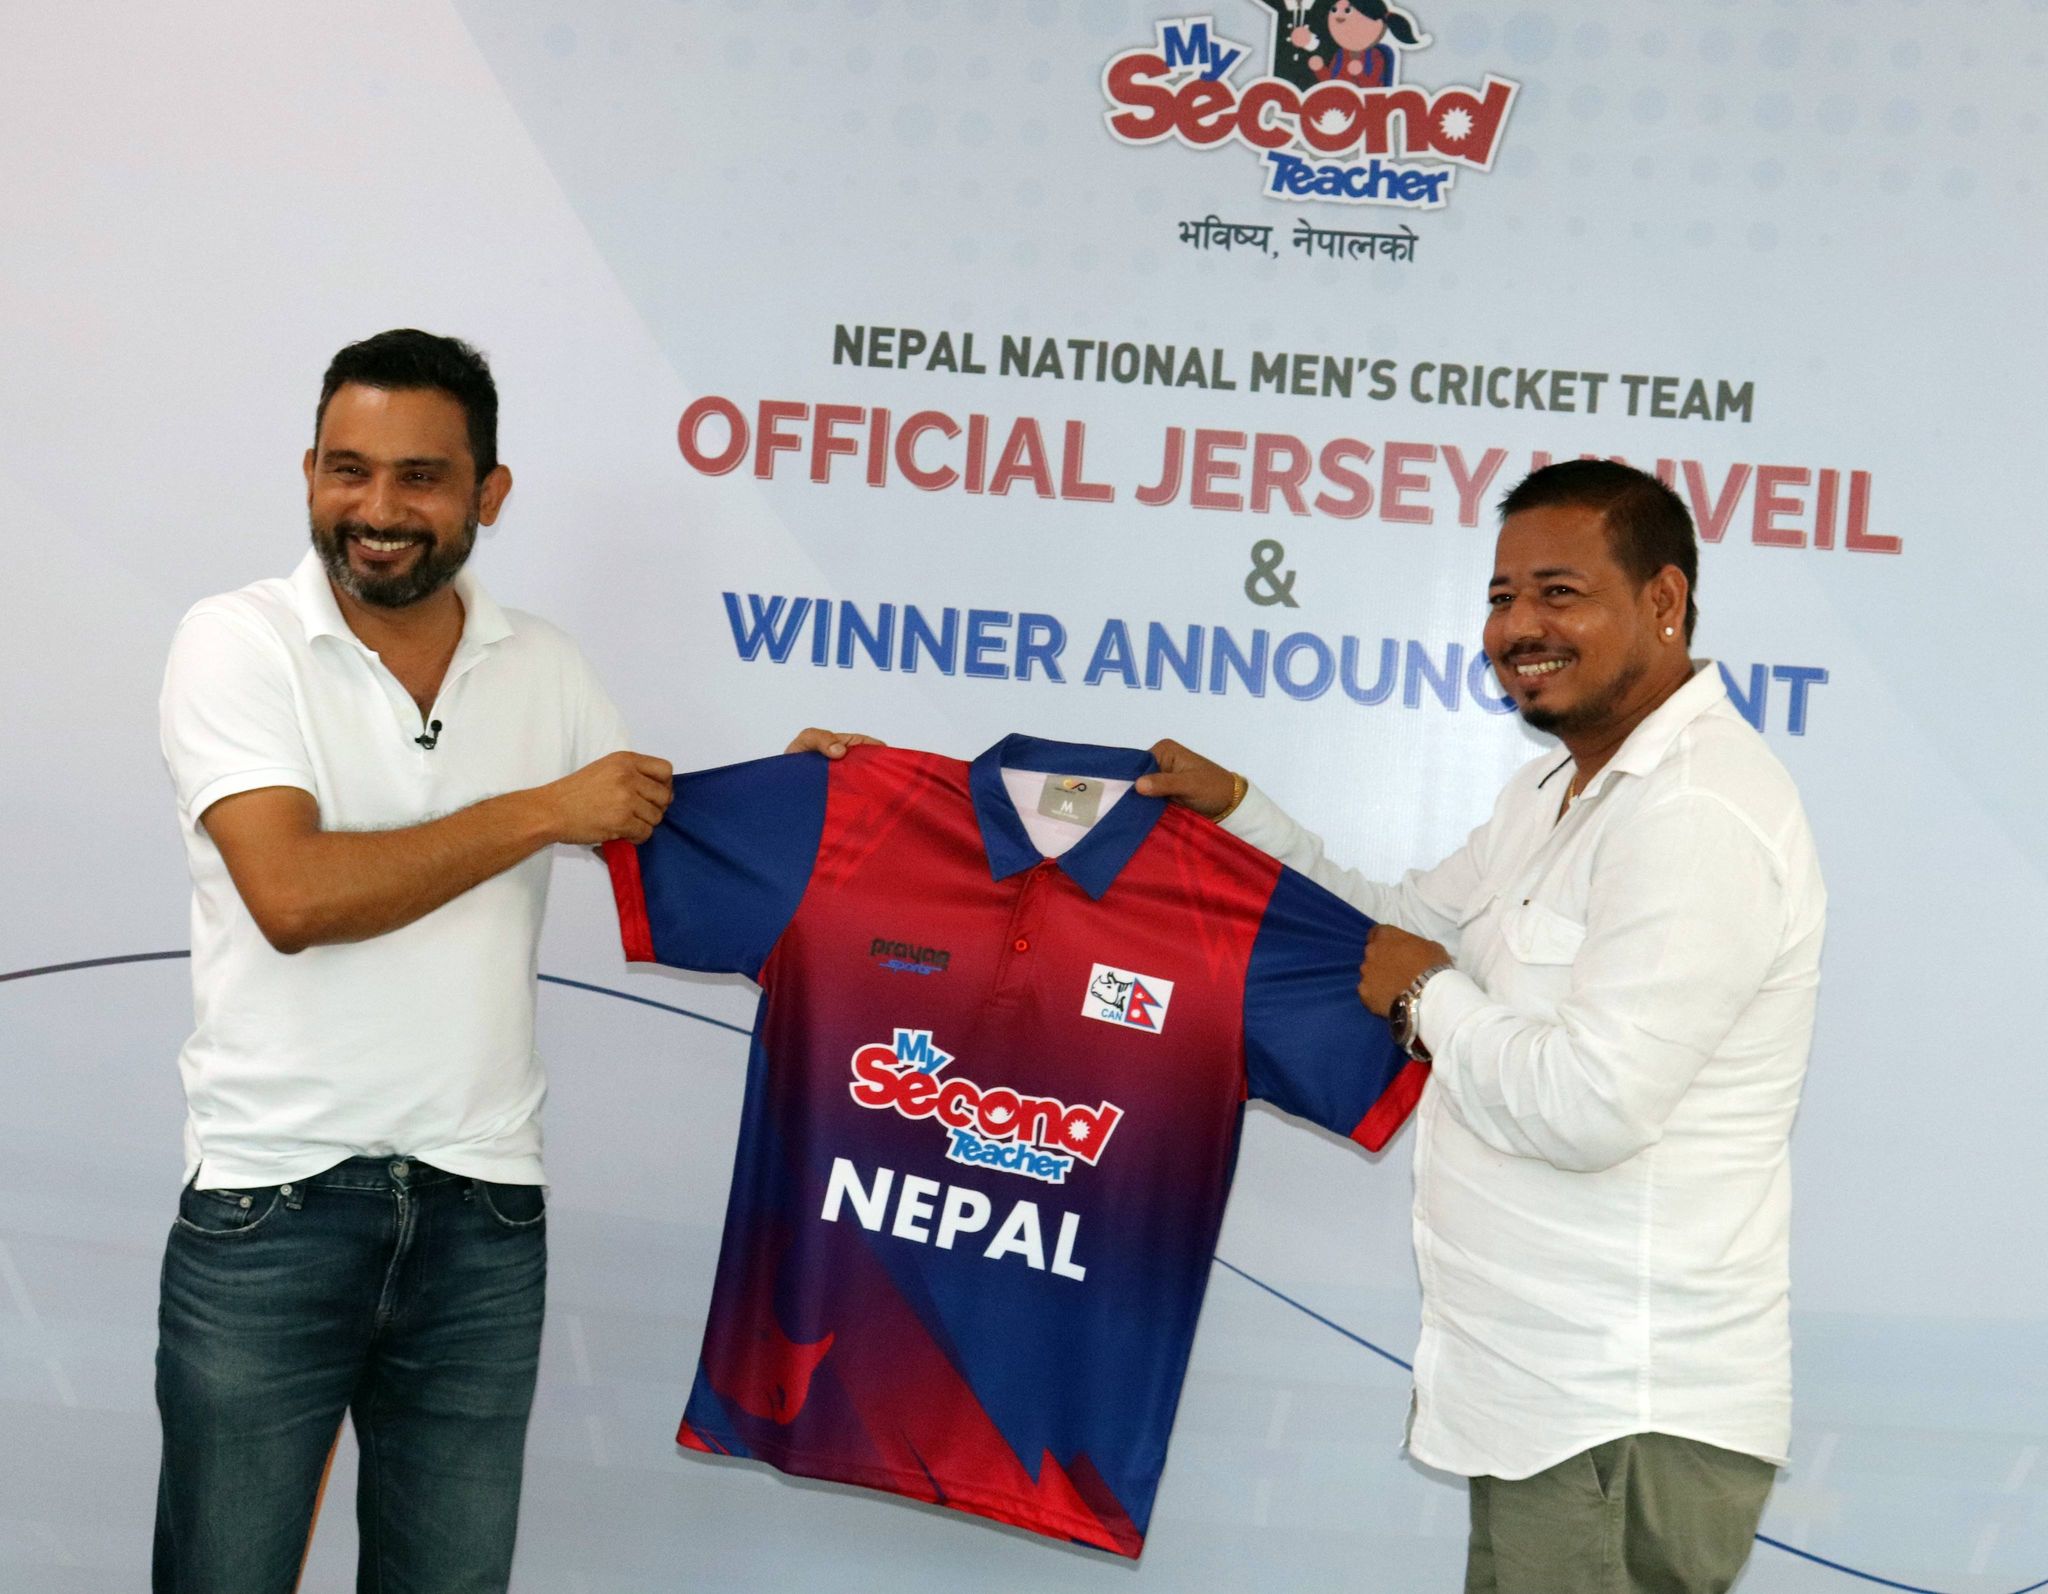 राष्ट्रिय क्रिकेट टिमको नयाँ जर्सी सार्वजनिक, डिजाइनकर्ताले पाए एक लाख रुपैंया पुरस्कार, ओमान भ्रमणमा जर्सी लगाइने